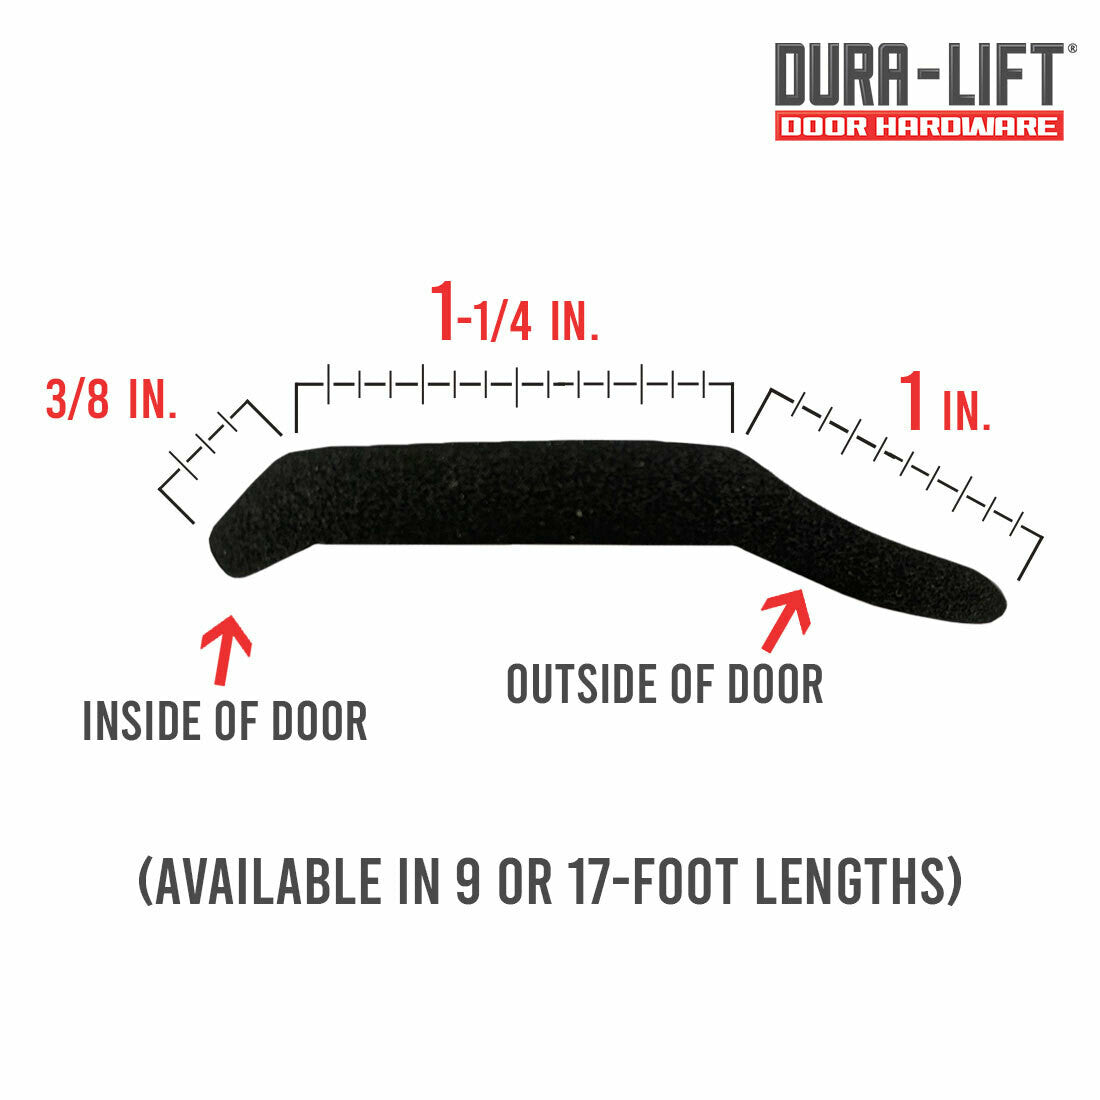 DURA-LIFT Nail-In Rubber Garage Door Bottom Seal for Wood Doors